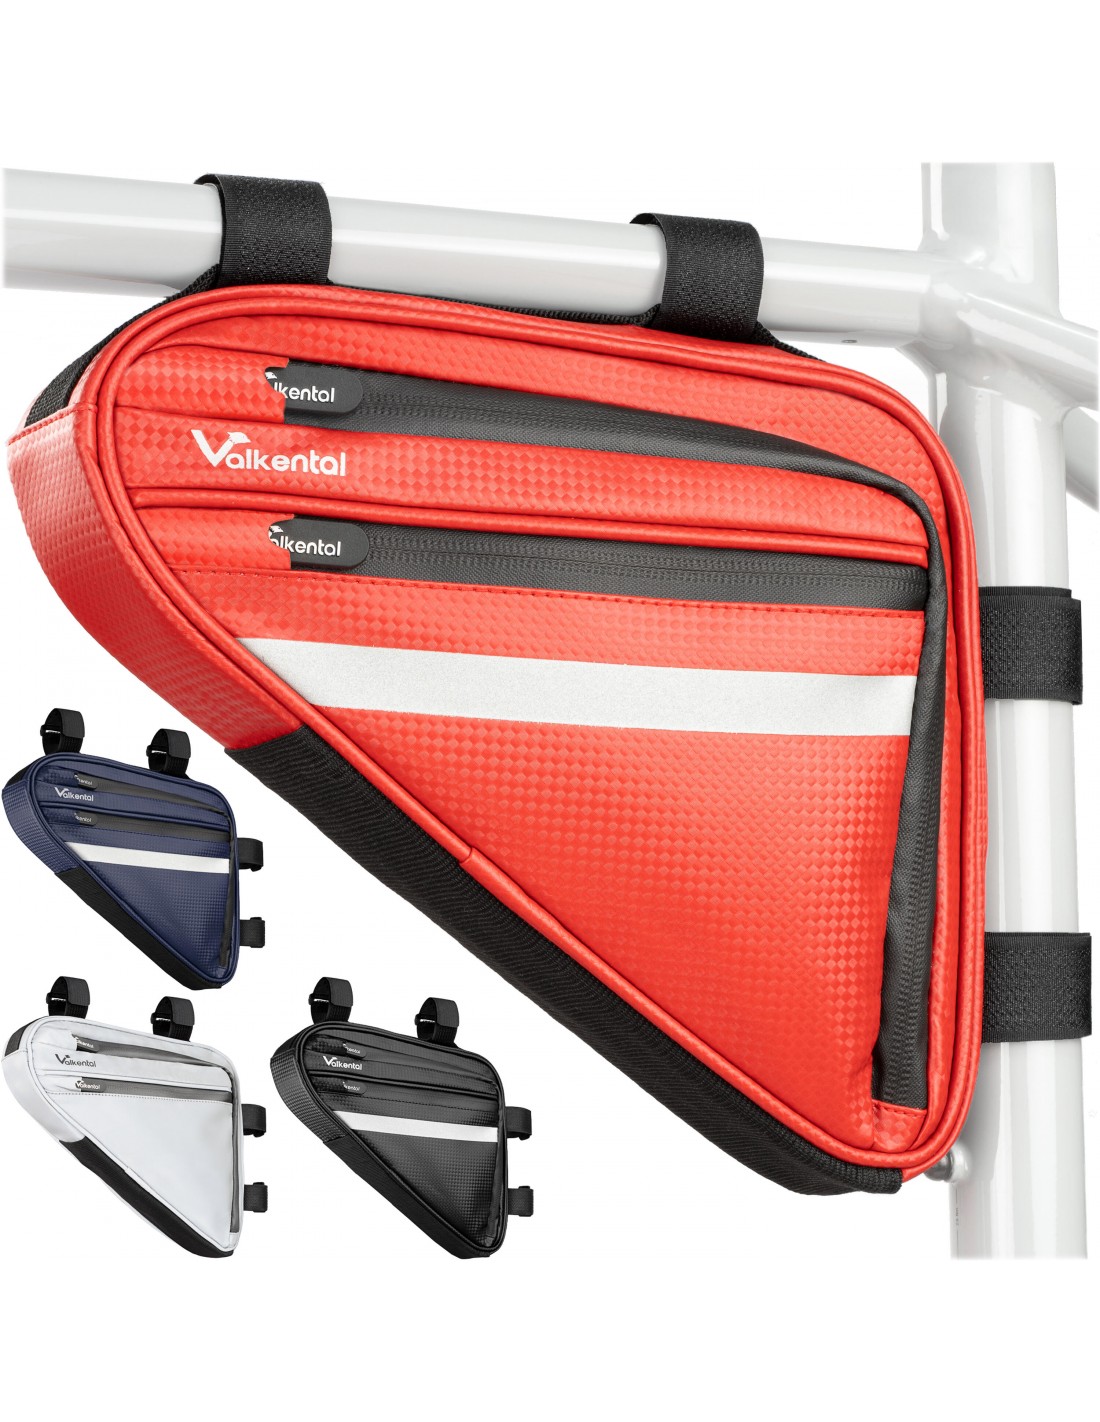 Valkental Triangel Bag - Praktische Rahmentasche mit viel Platz, rot Taschenvariante - Rahmentasche, von Valkental